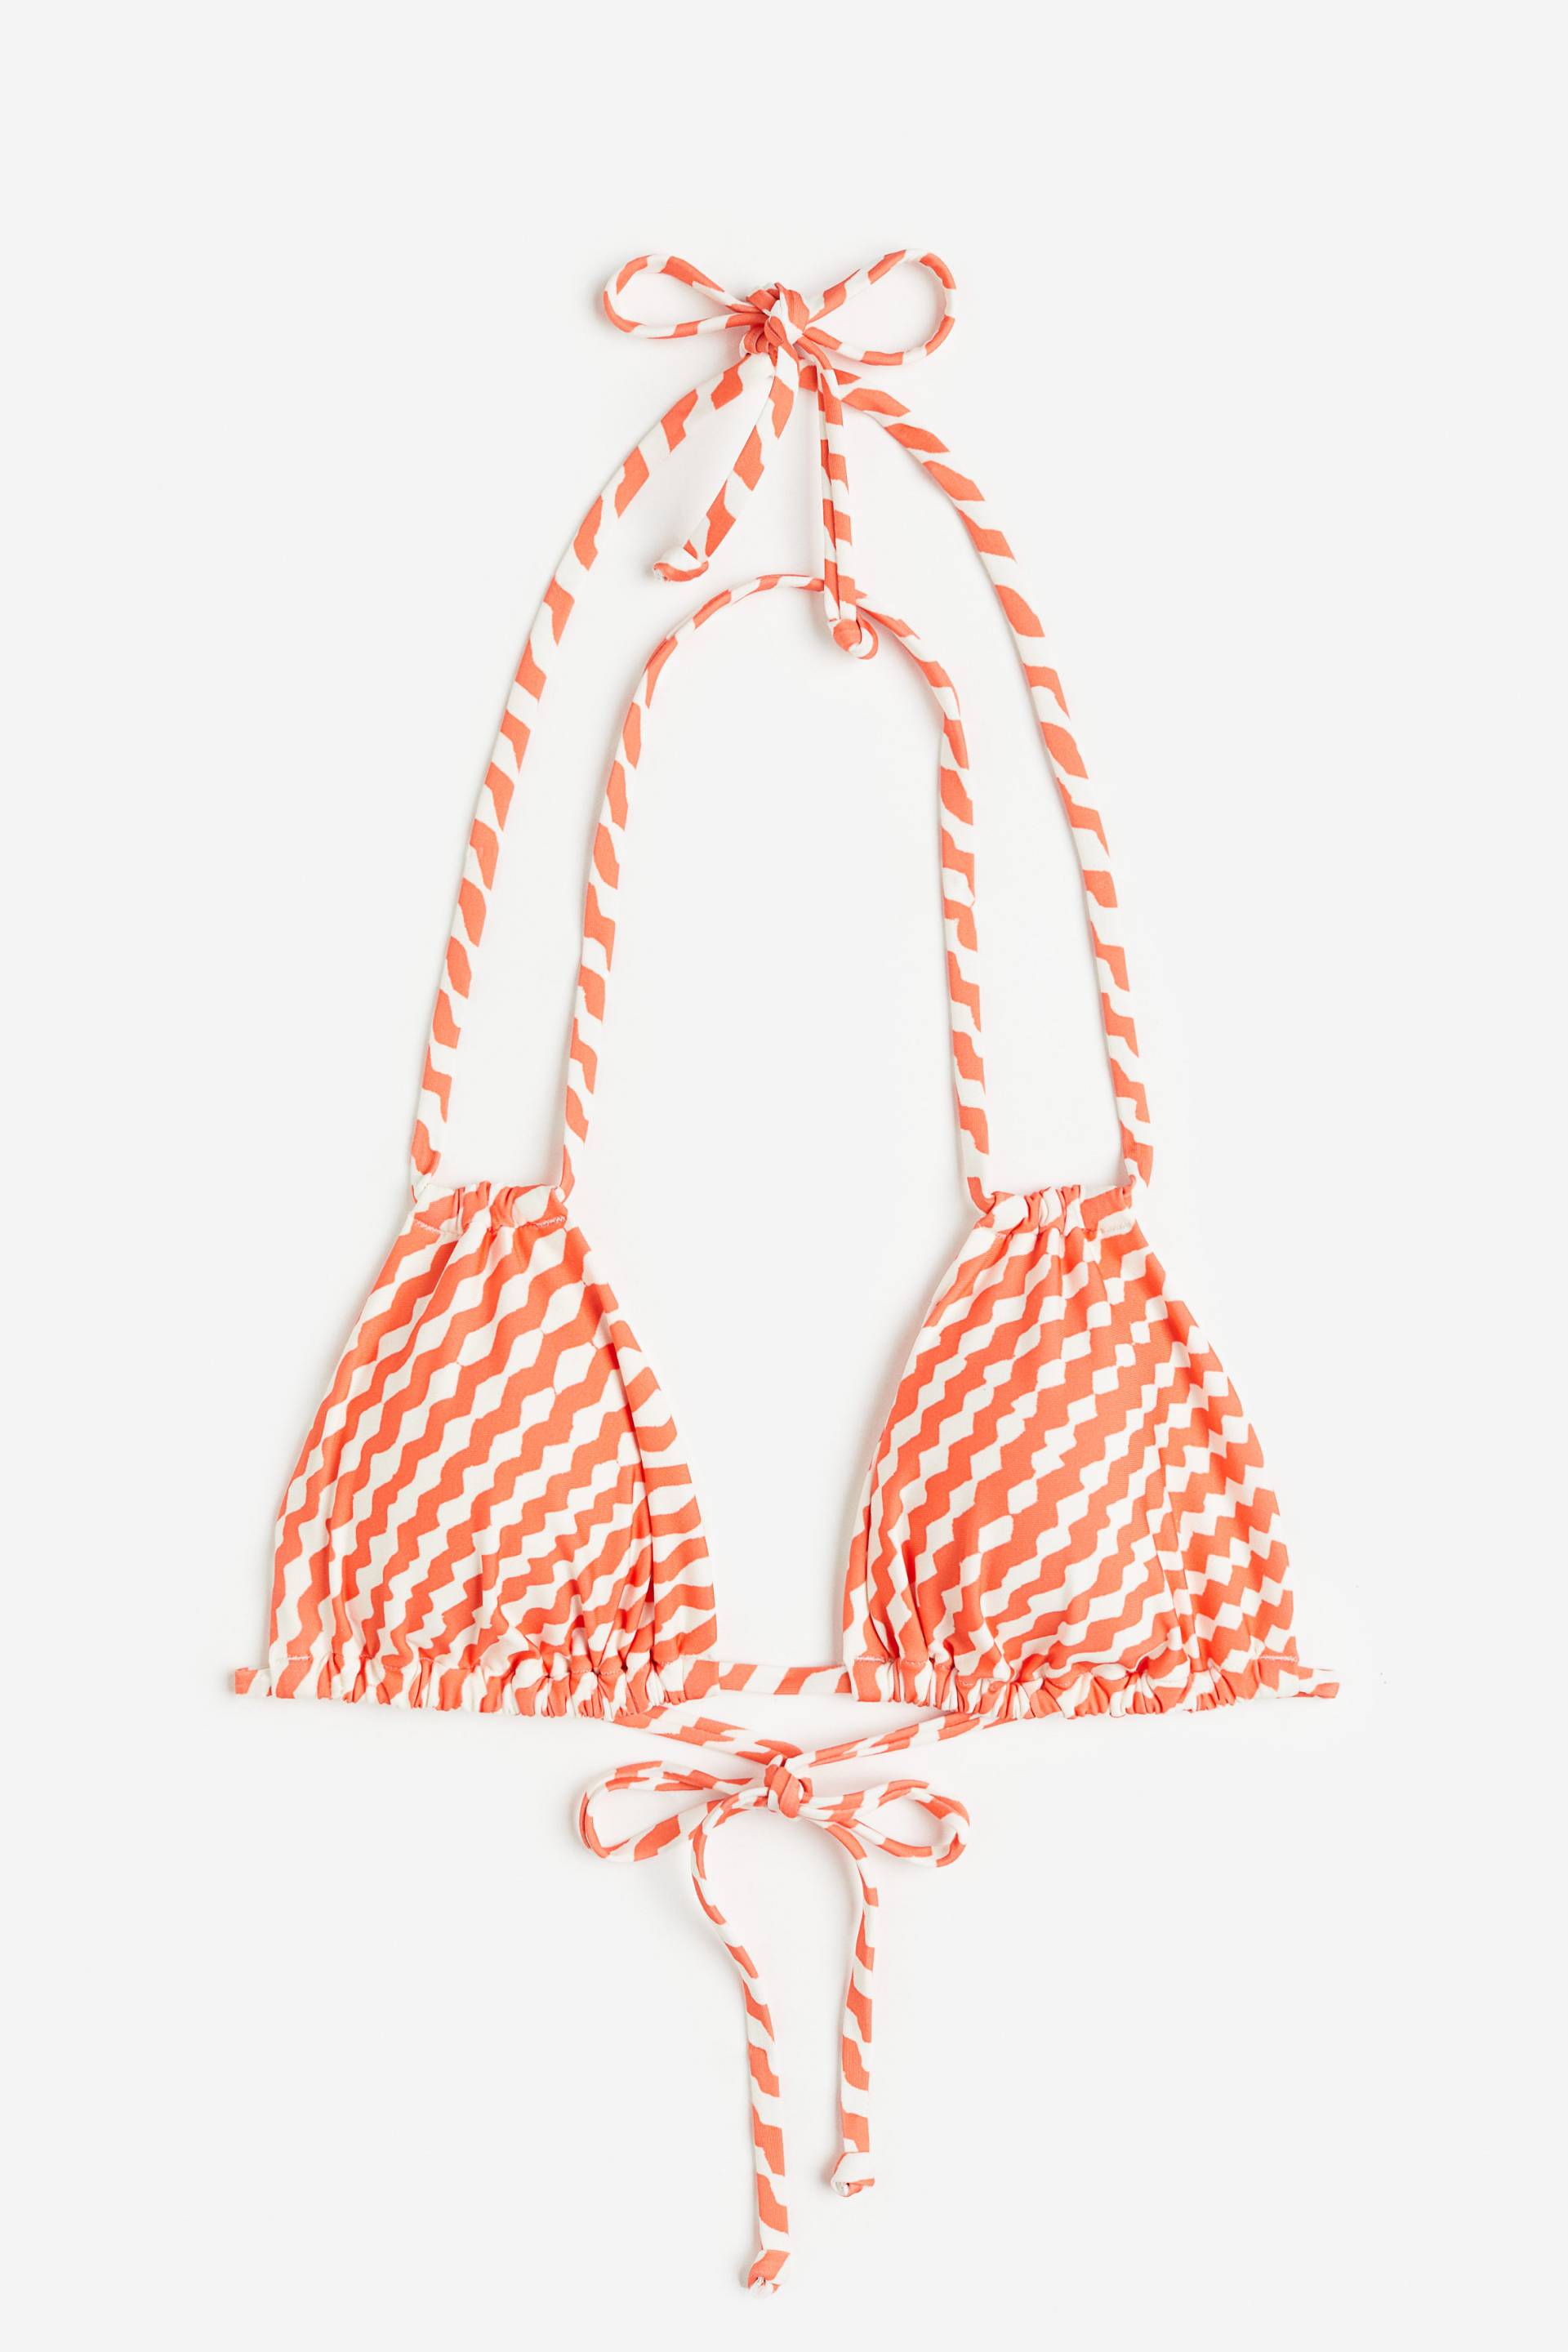 H&M Wattiertes Triangel-Bikinitop Orange/Weiß gemustert, Bikini-Oberteil in Größe 44. Farbe: Orange/white patterned von H&M